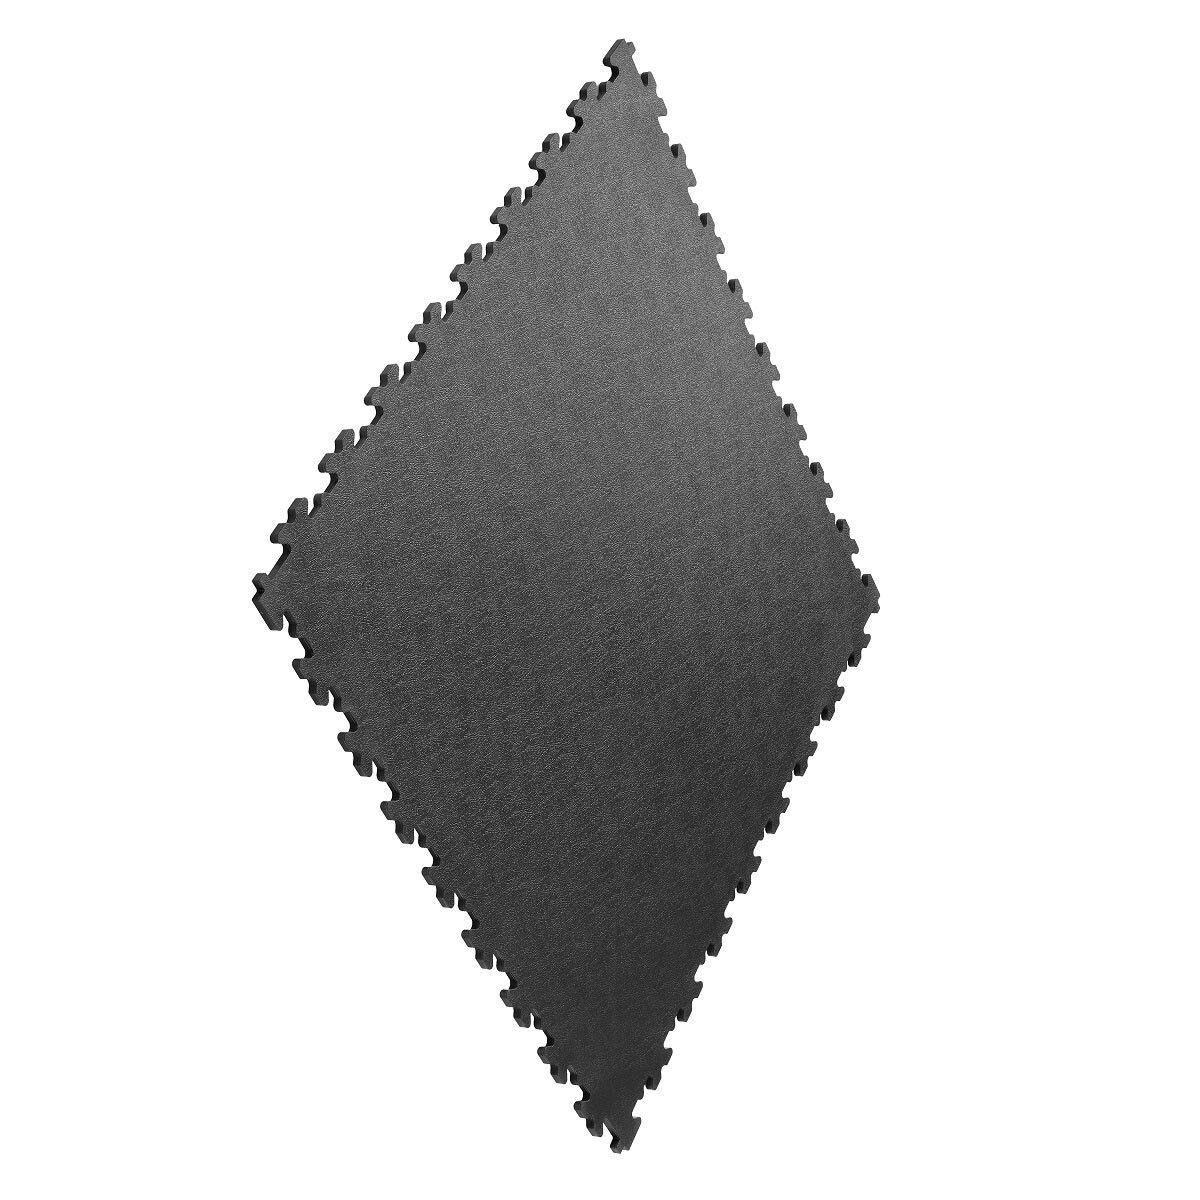 Klikflor X500 Garage Floor Tiles in Graphite (496 x 496 x 7mm) - 4 Pack